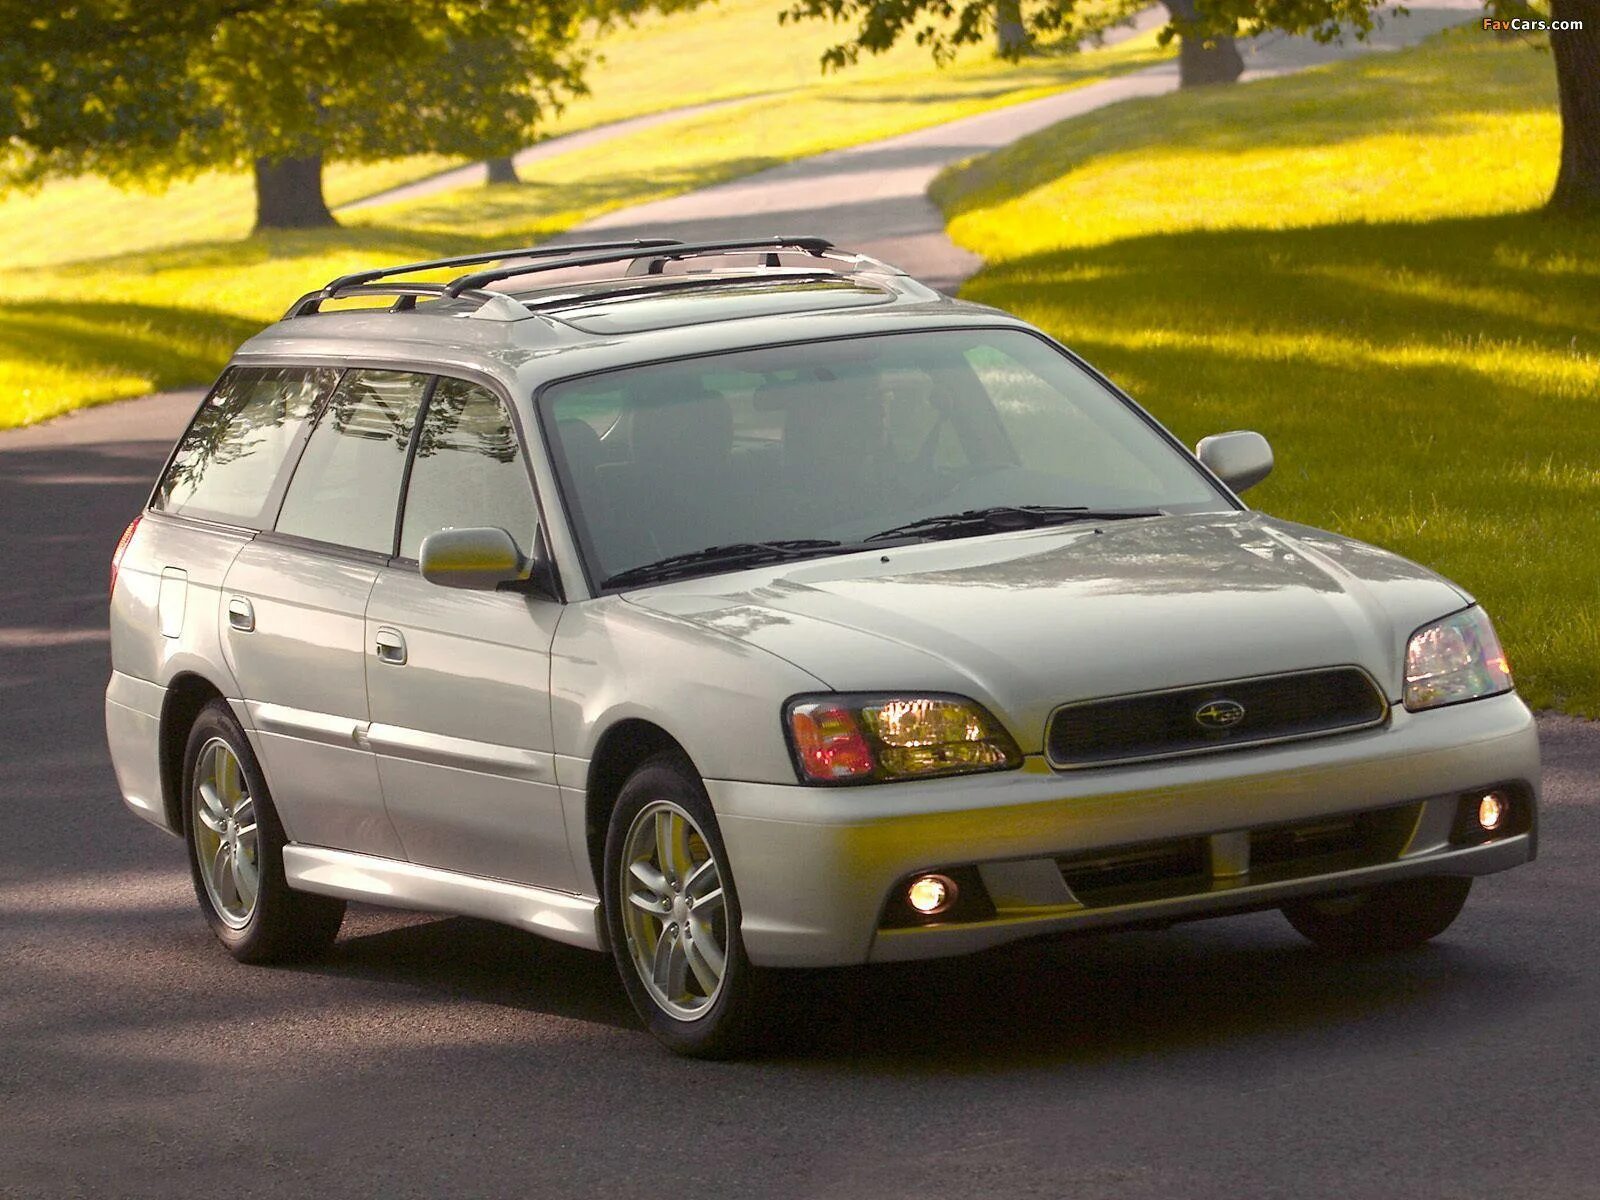 Subaru legacy 2.5. 1998 Subaru Legacy Wagon. Subaru Legacy 2003. Subaru Legacy Outback 2003. Subaru Legacy 2.5 1998.